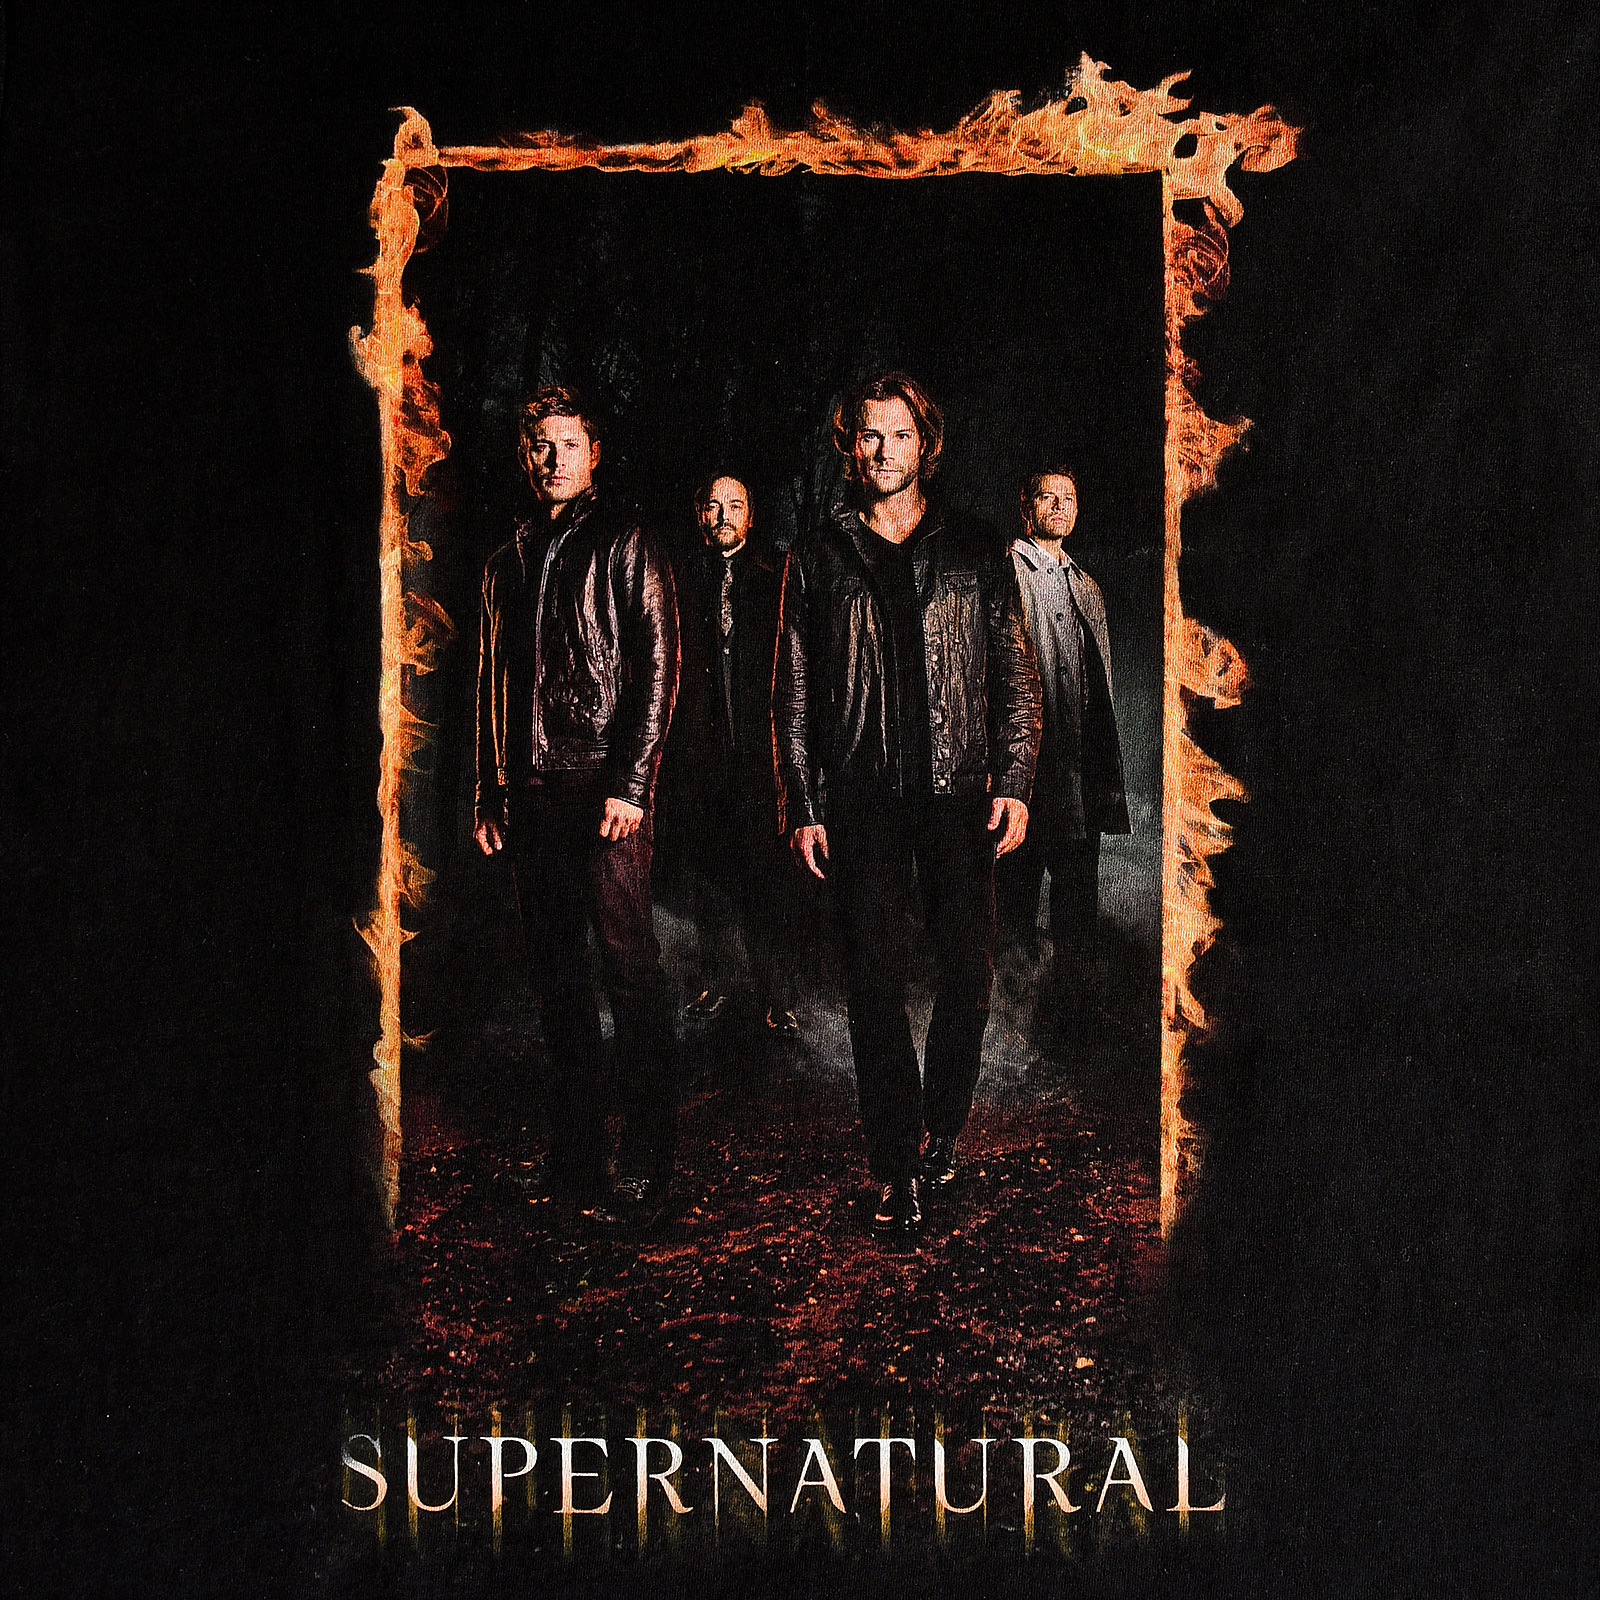 Supernatural - Burning Gate Poster T-Shirt schwarz